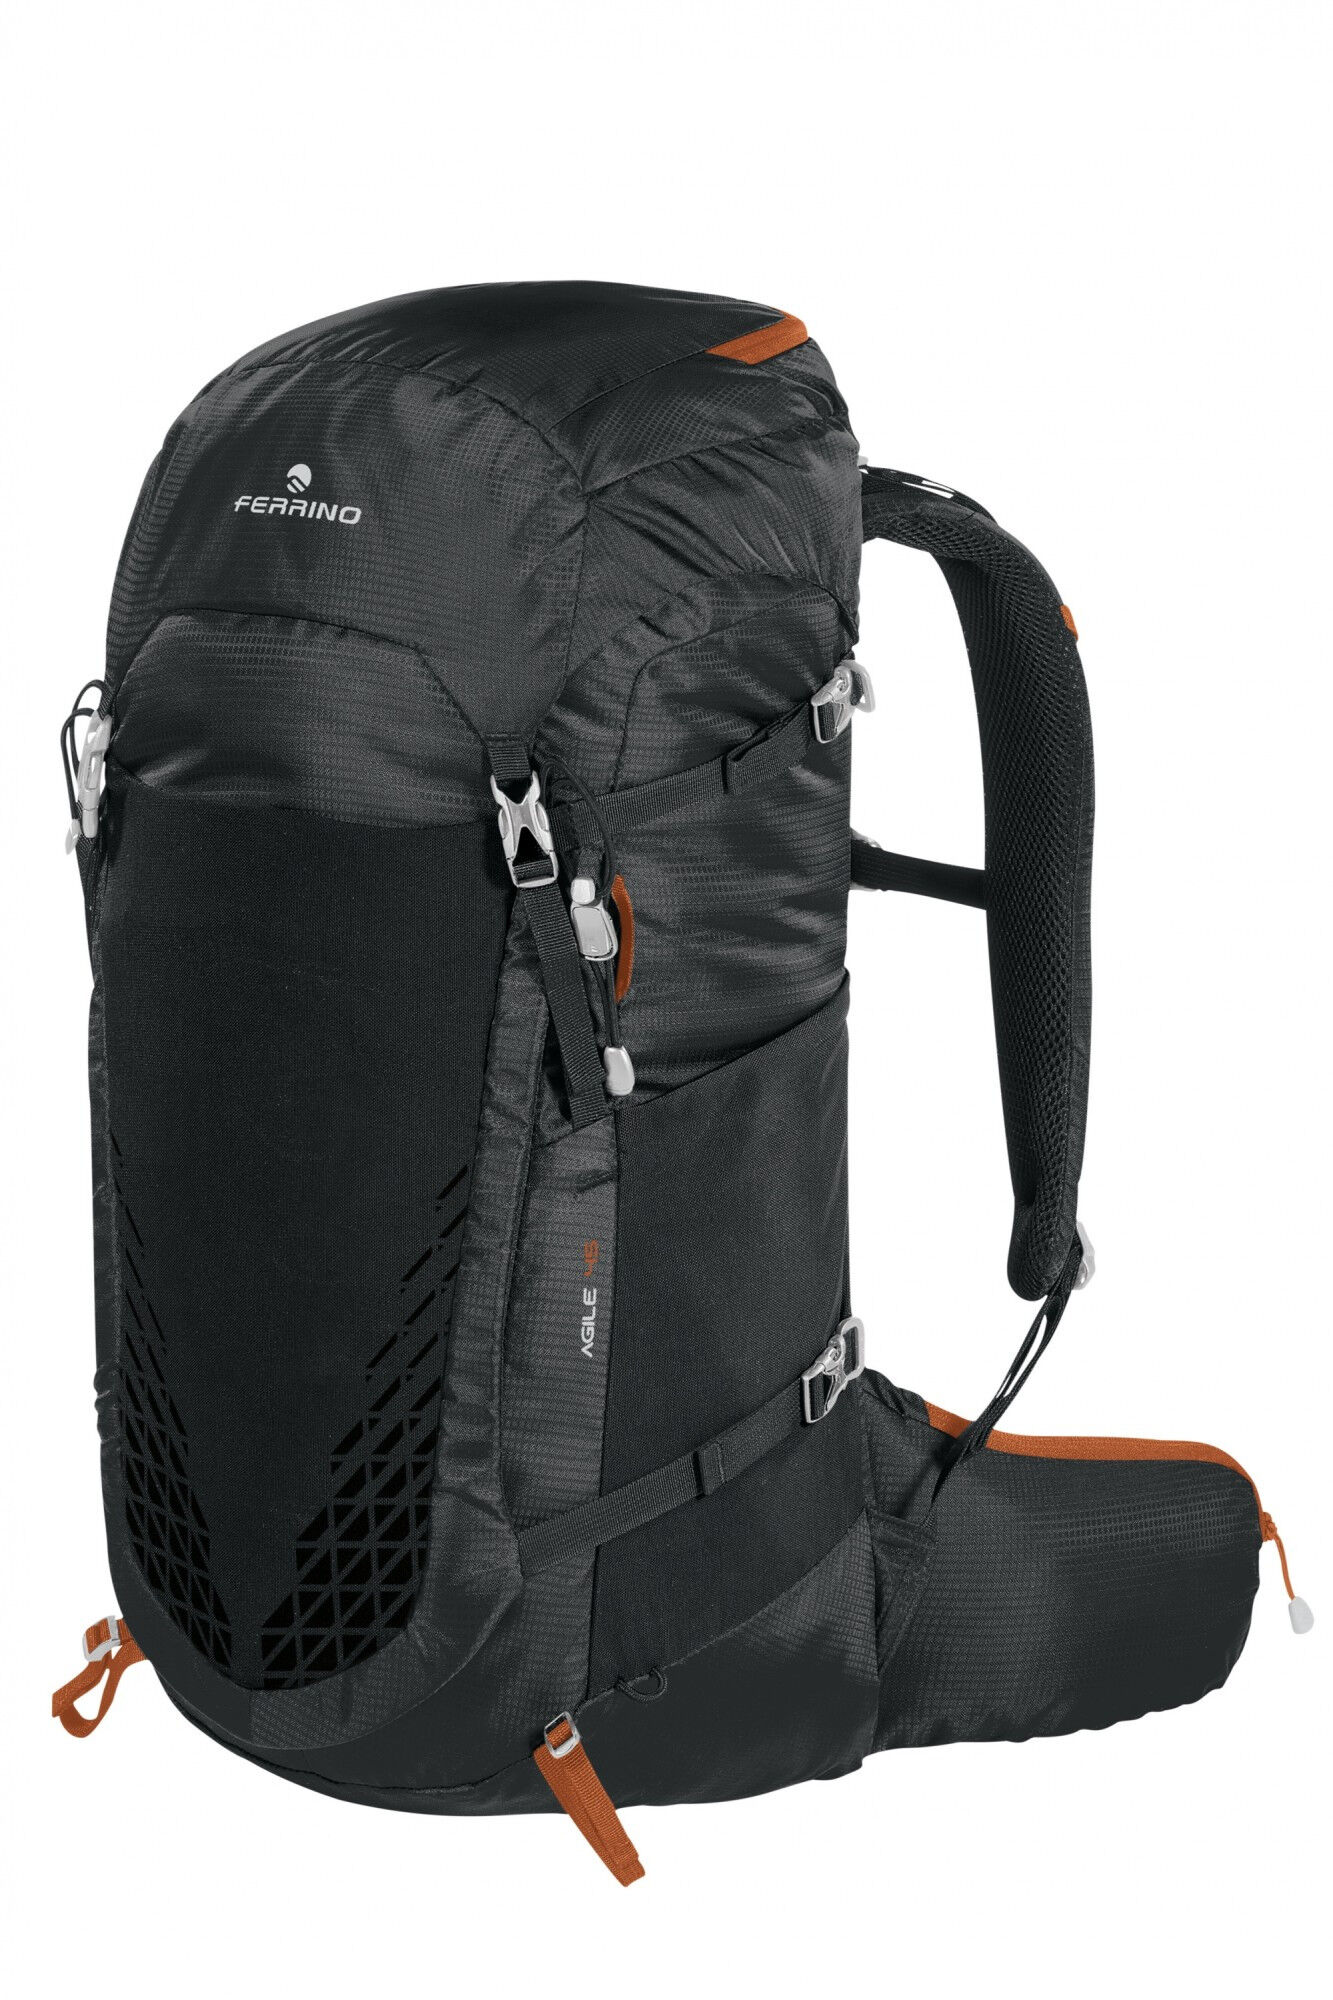 Ferrino Agile 45 - Walking backpack